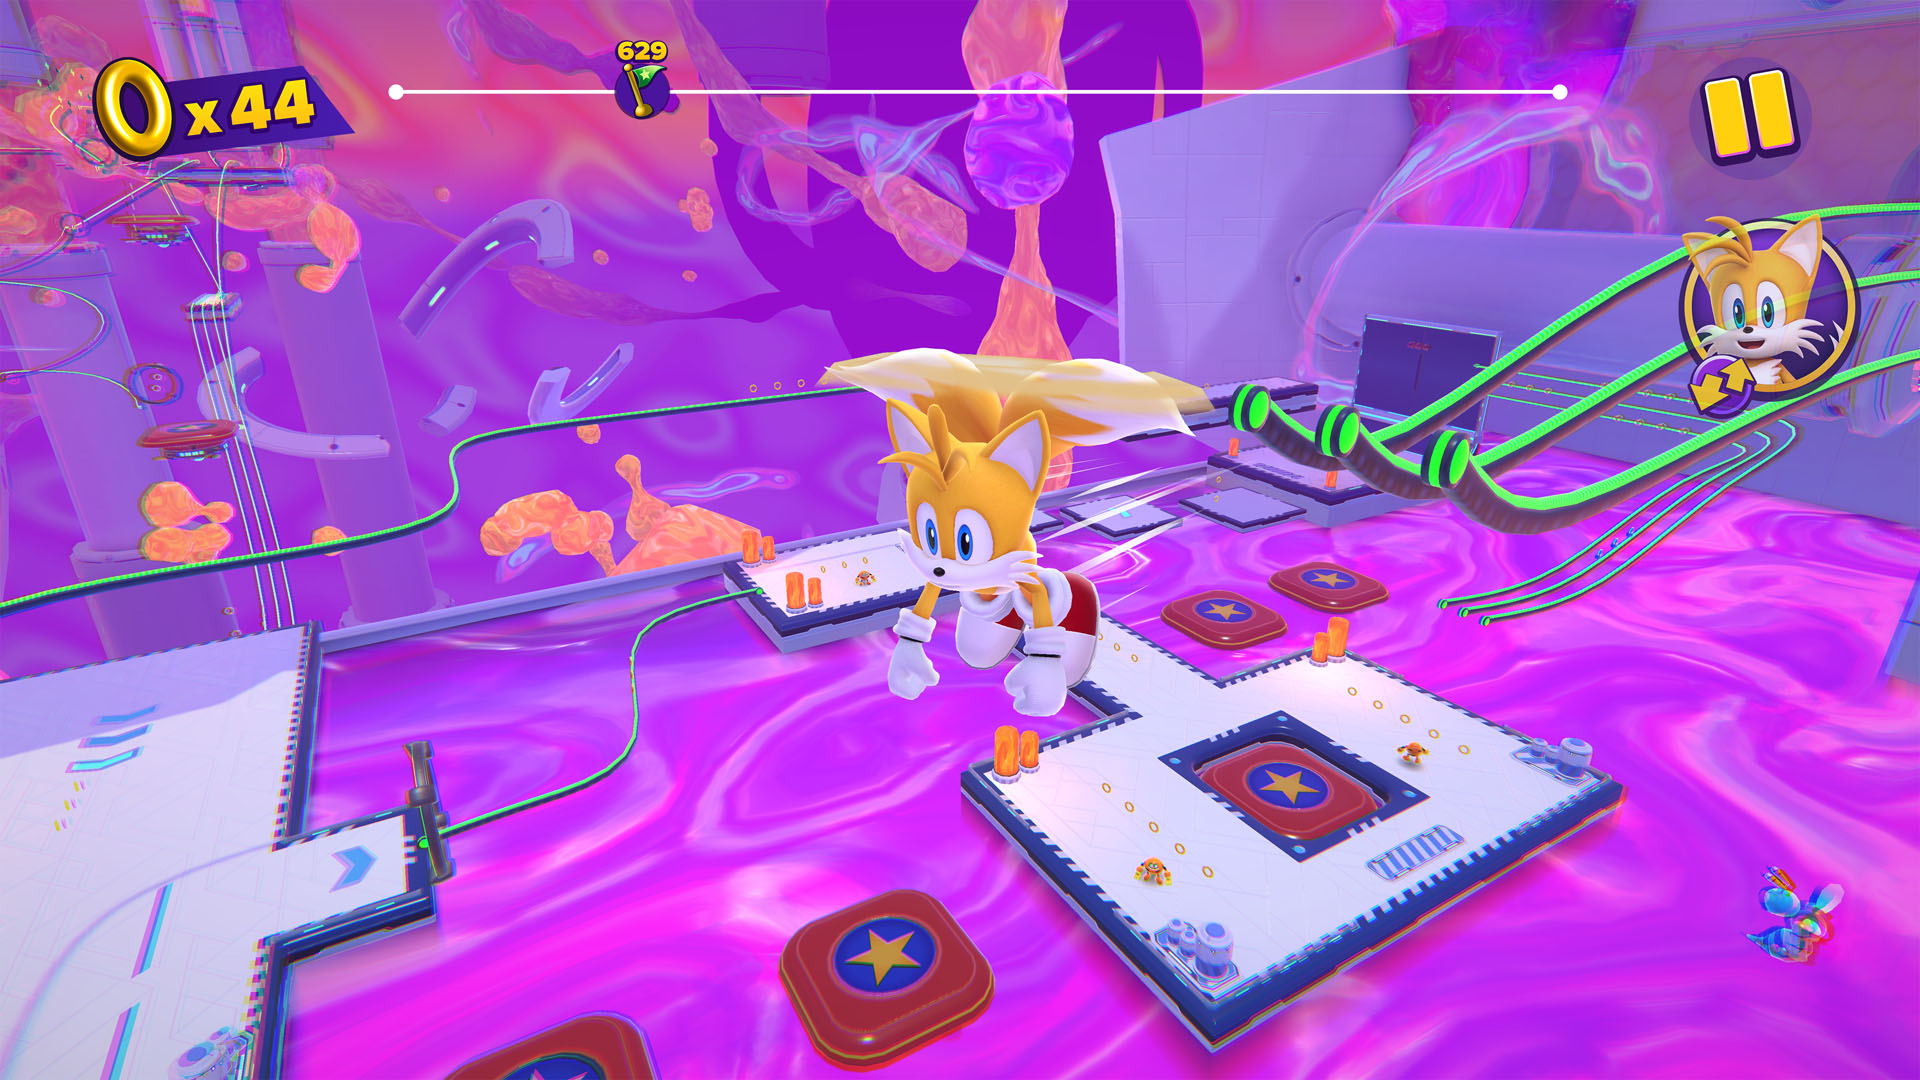 New 3D platformer Sonic Dream Team announced by Sega